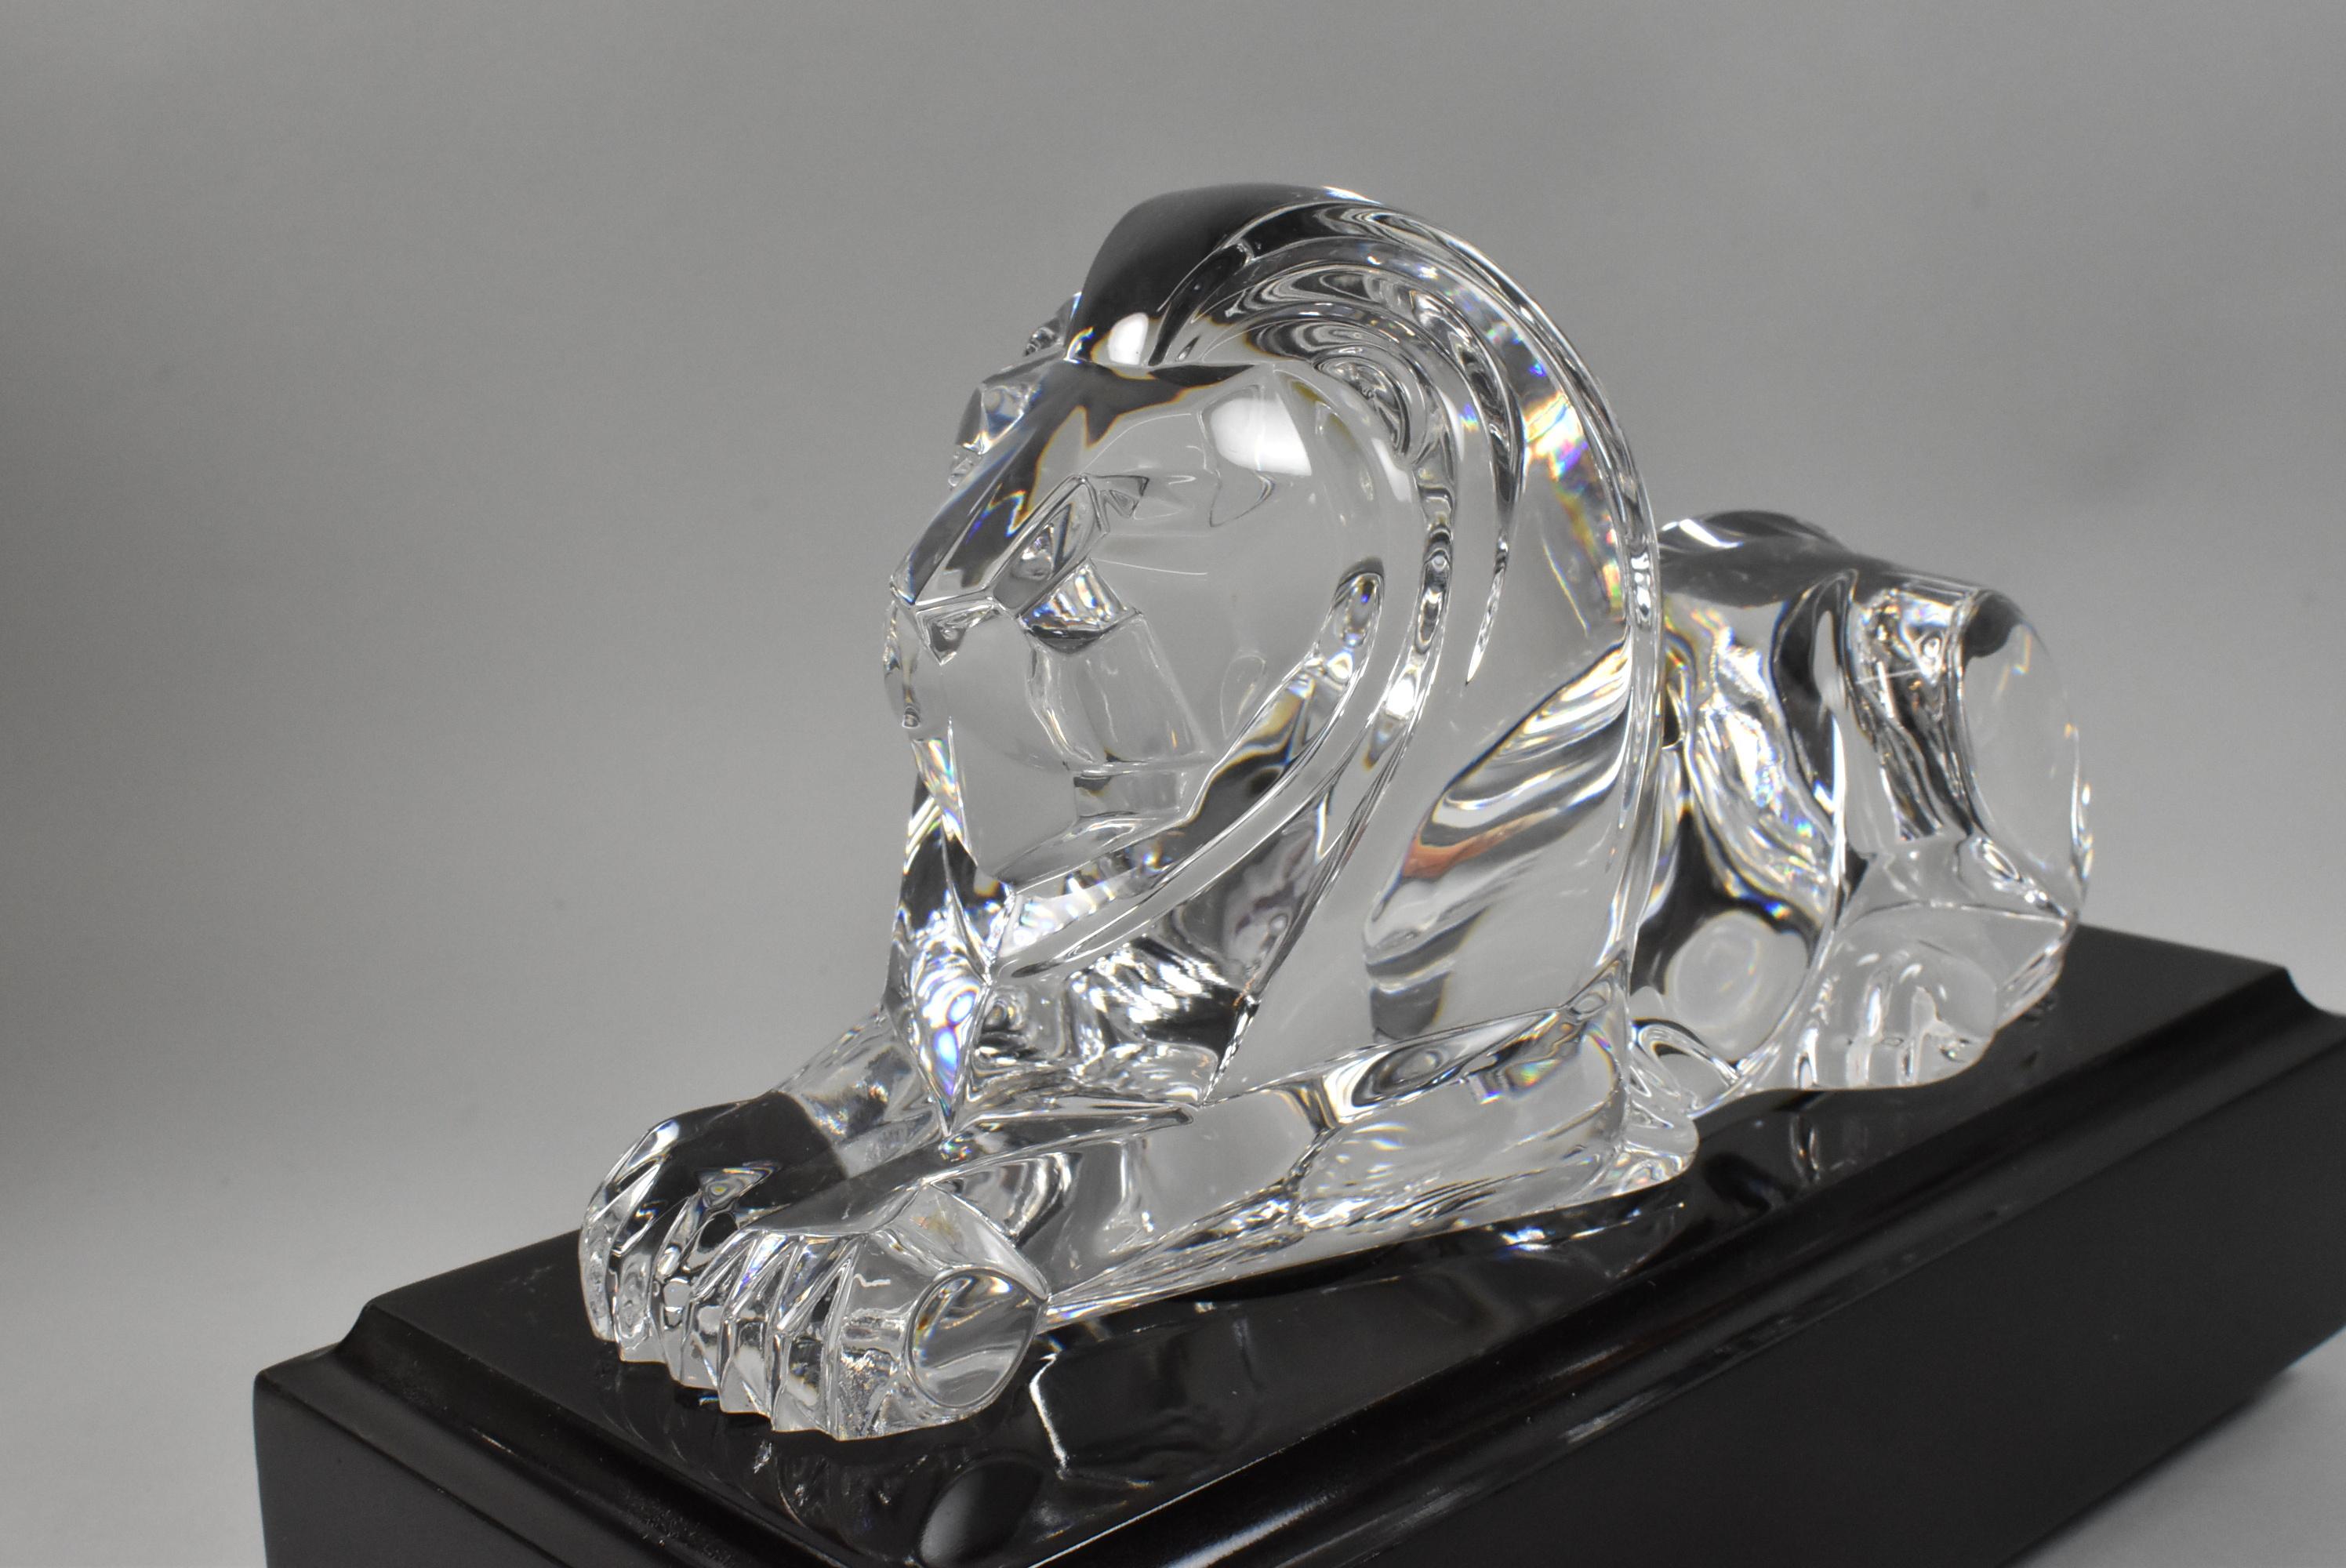 Legender Löwe aus Steuben-Kristall mit Sockel und originalem Lederetui. Entworfen von Lloyd Atkins um 1986. Keine Schäden oder Kratzer auf dem Glas. Die Lederbox hat einige Gebrauchsspuren.